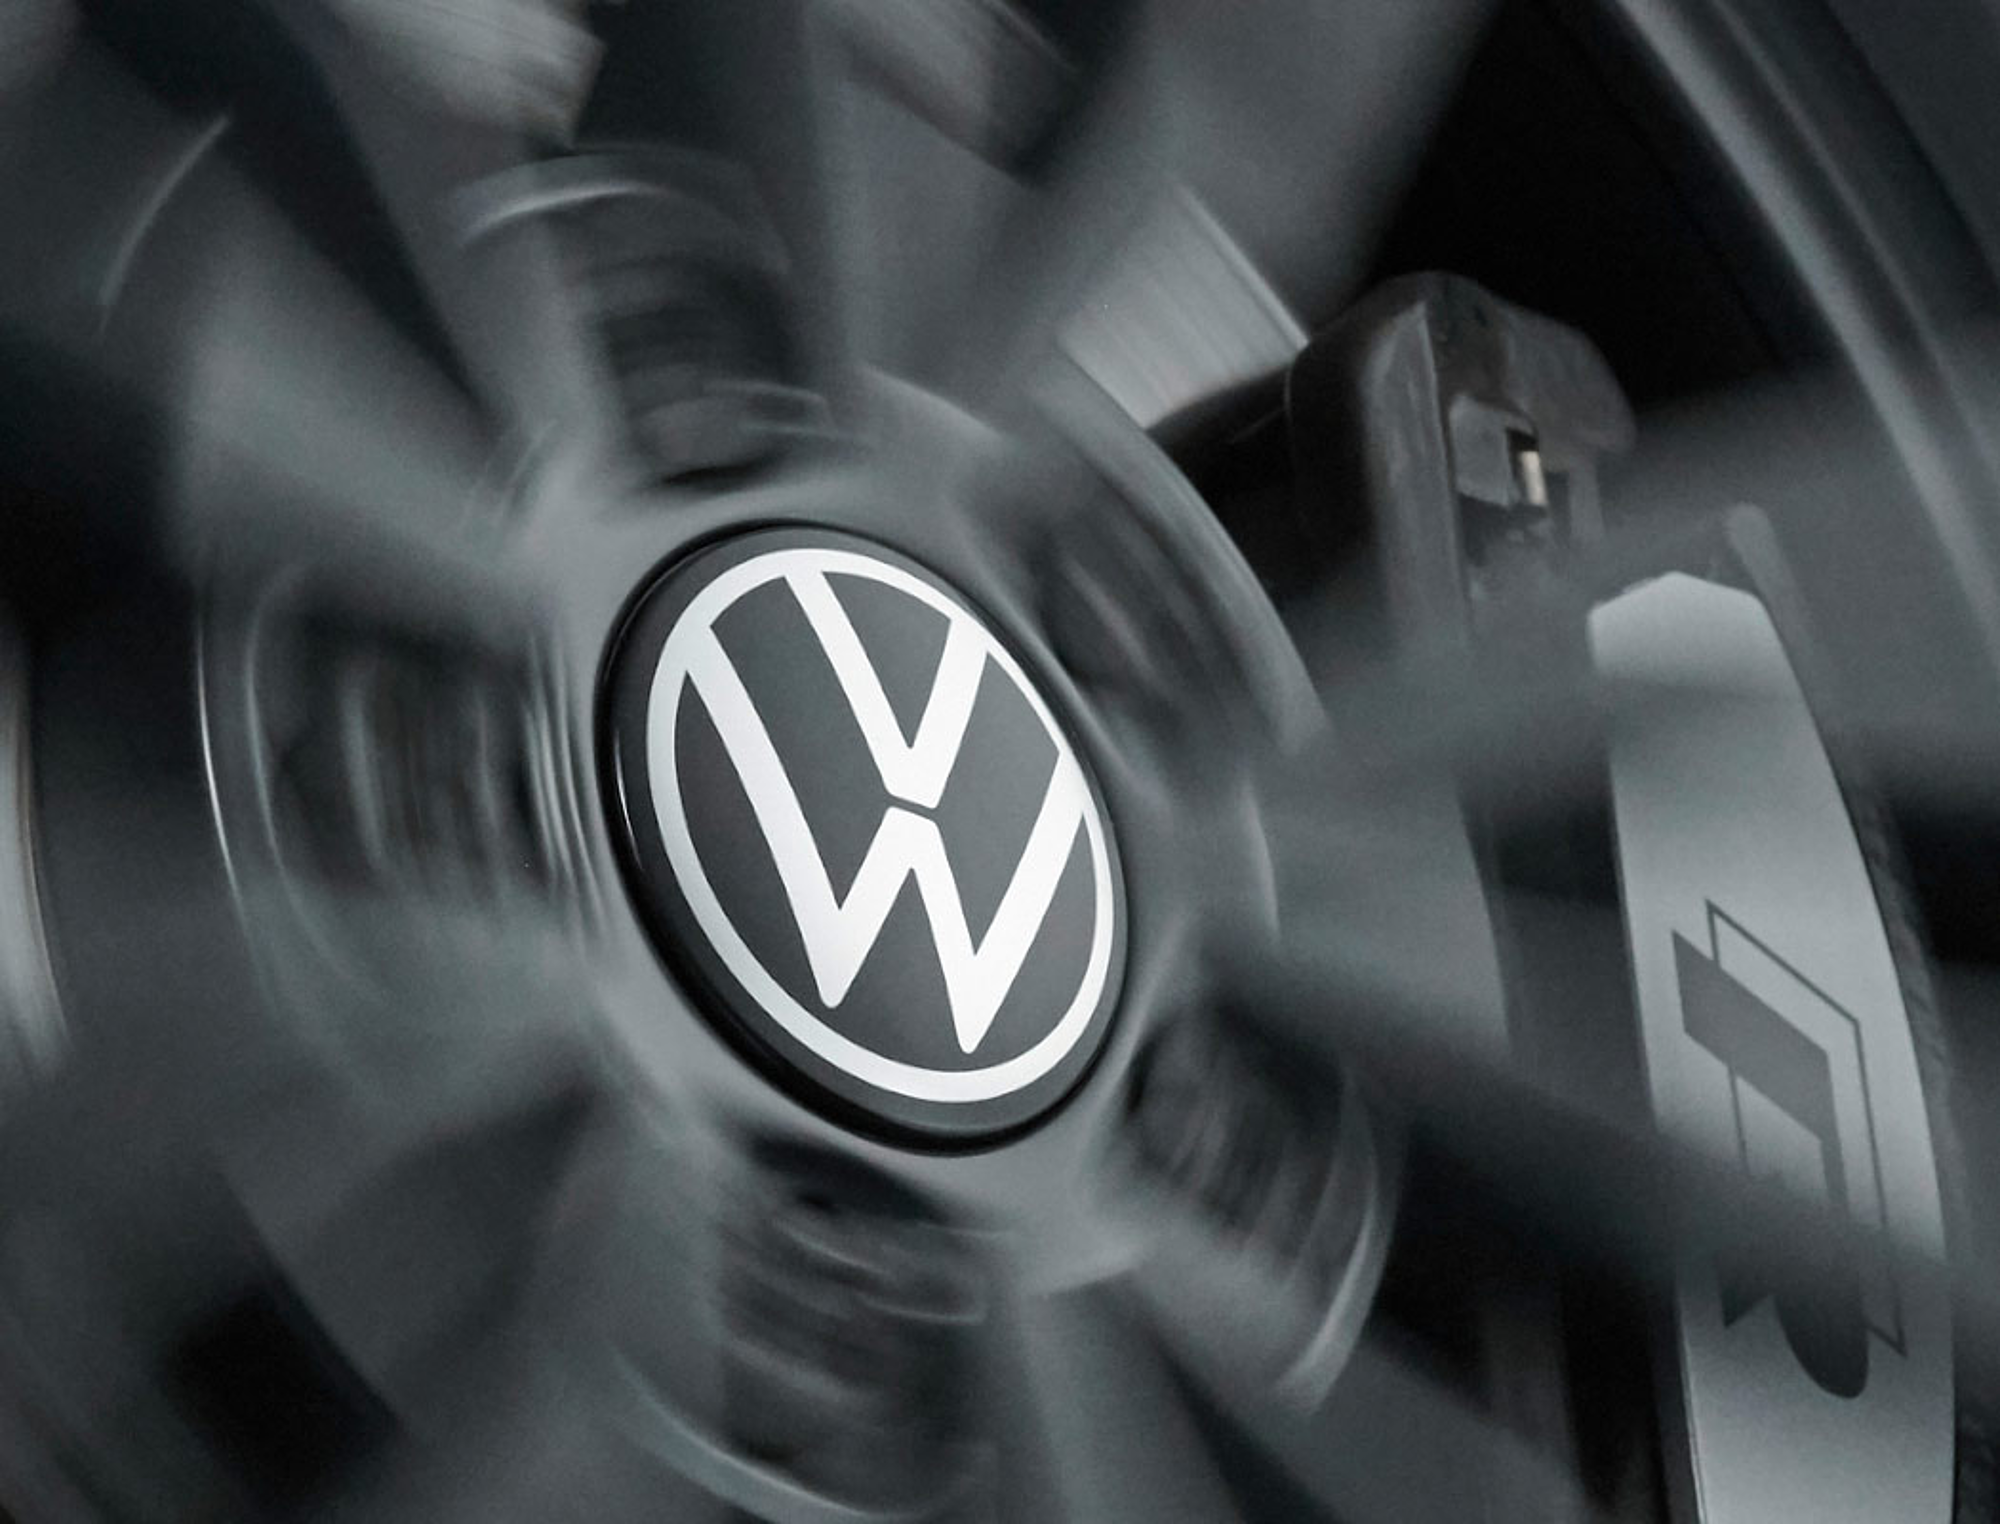 Enjoliveur cache écrou VW polo - Équipement auto